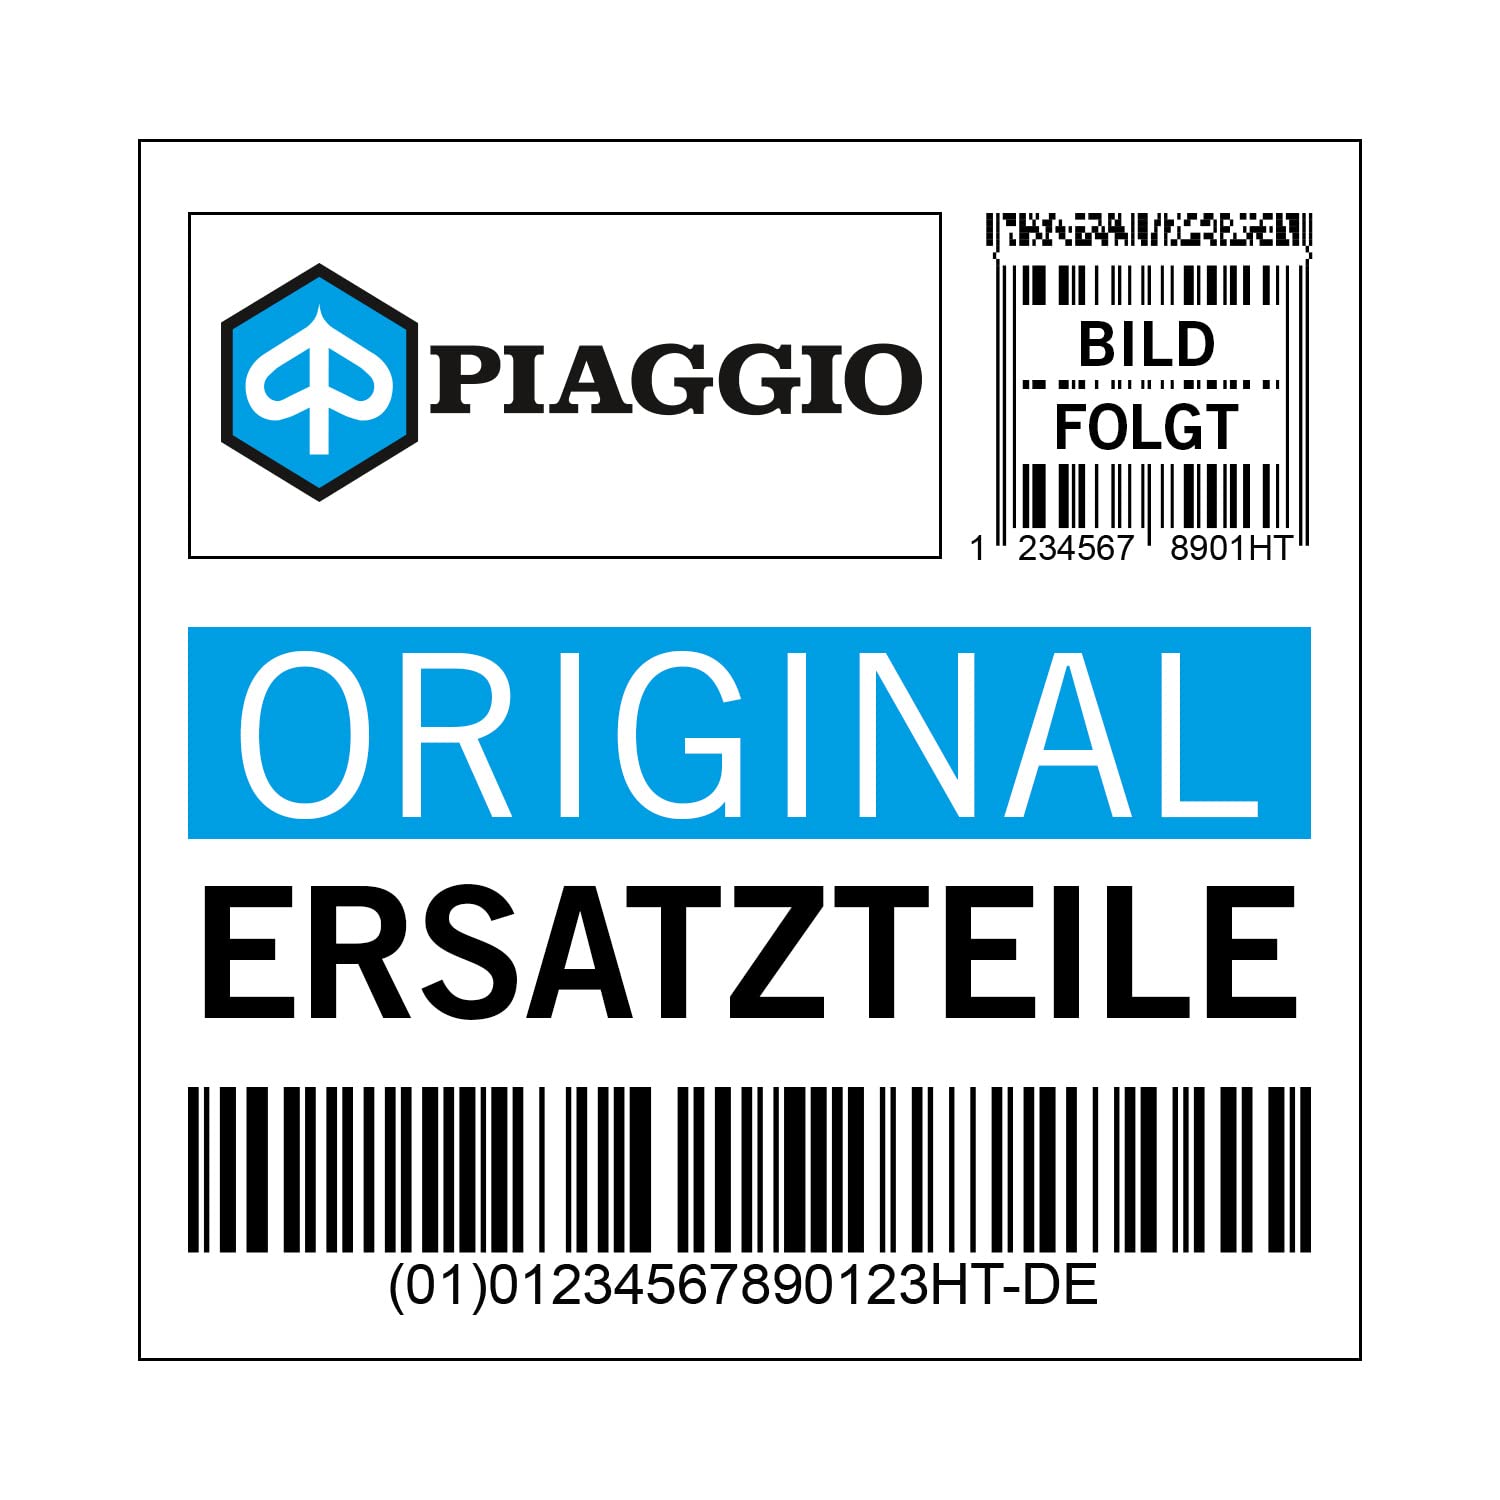 Kabelführung Piaggio Dichtung, 975715 von Maxtuned